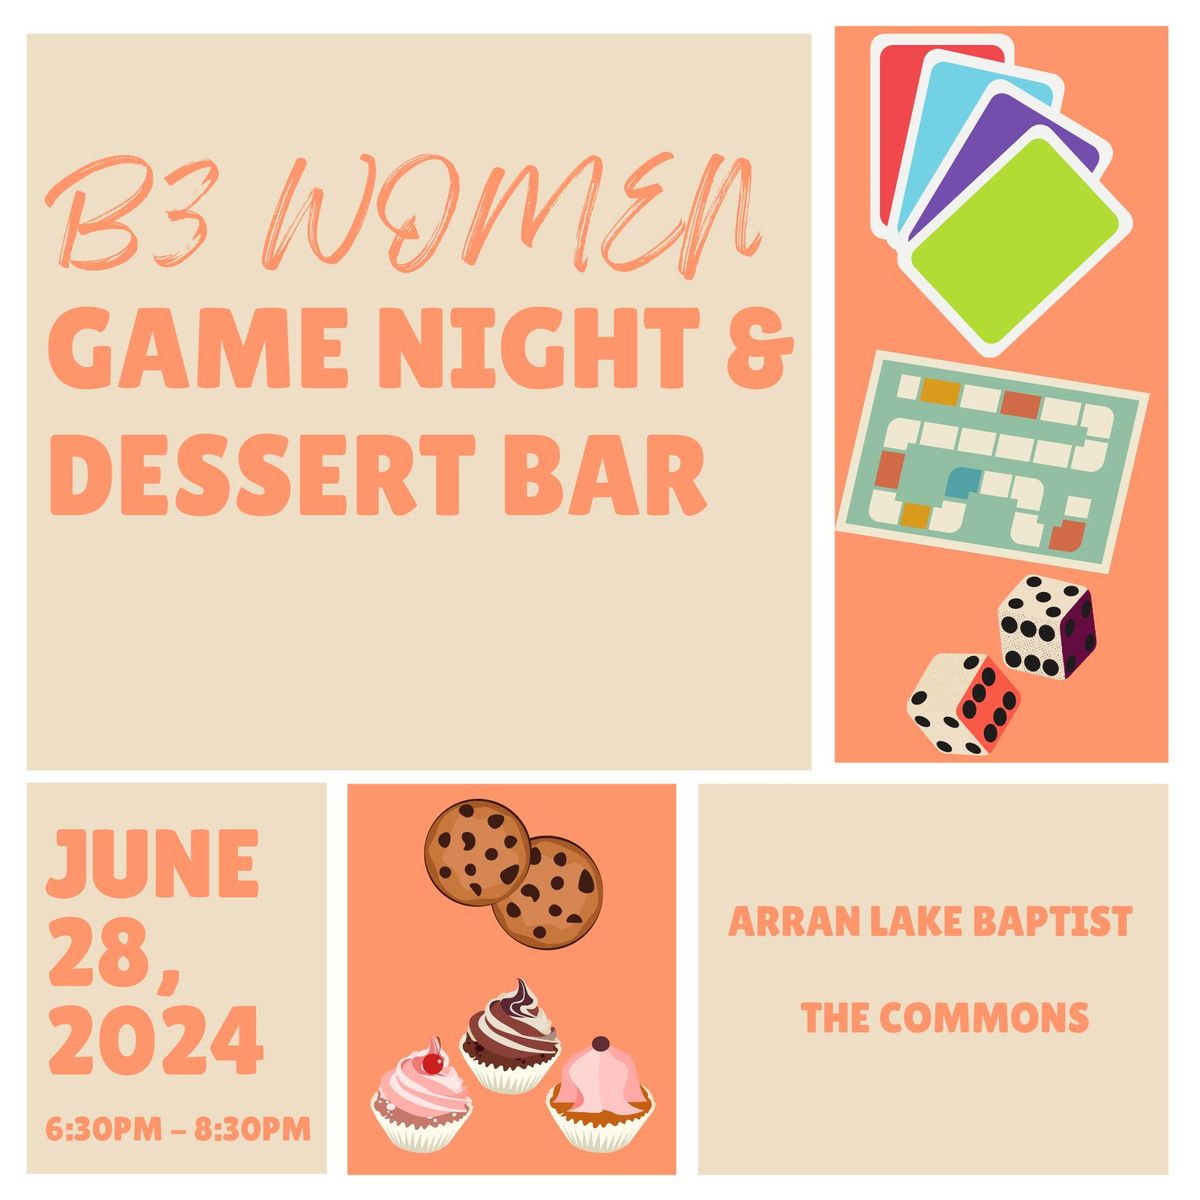 B3 Women - Game Night and Dessert Bar